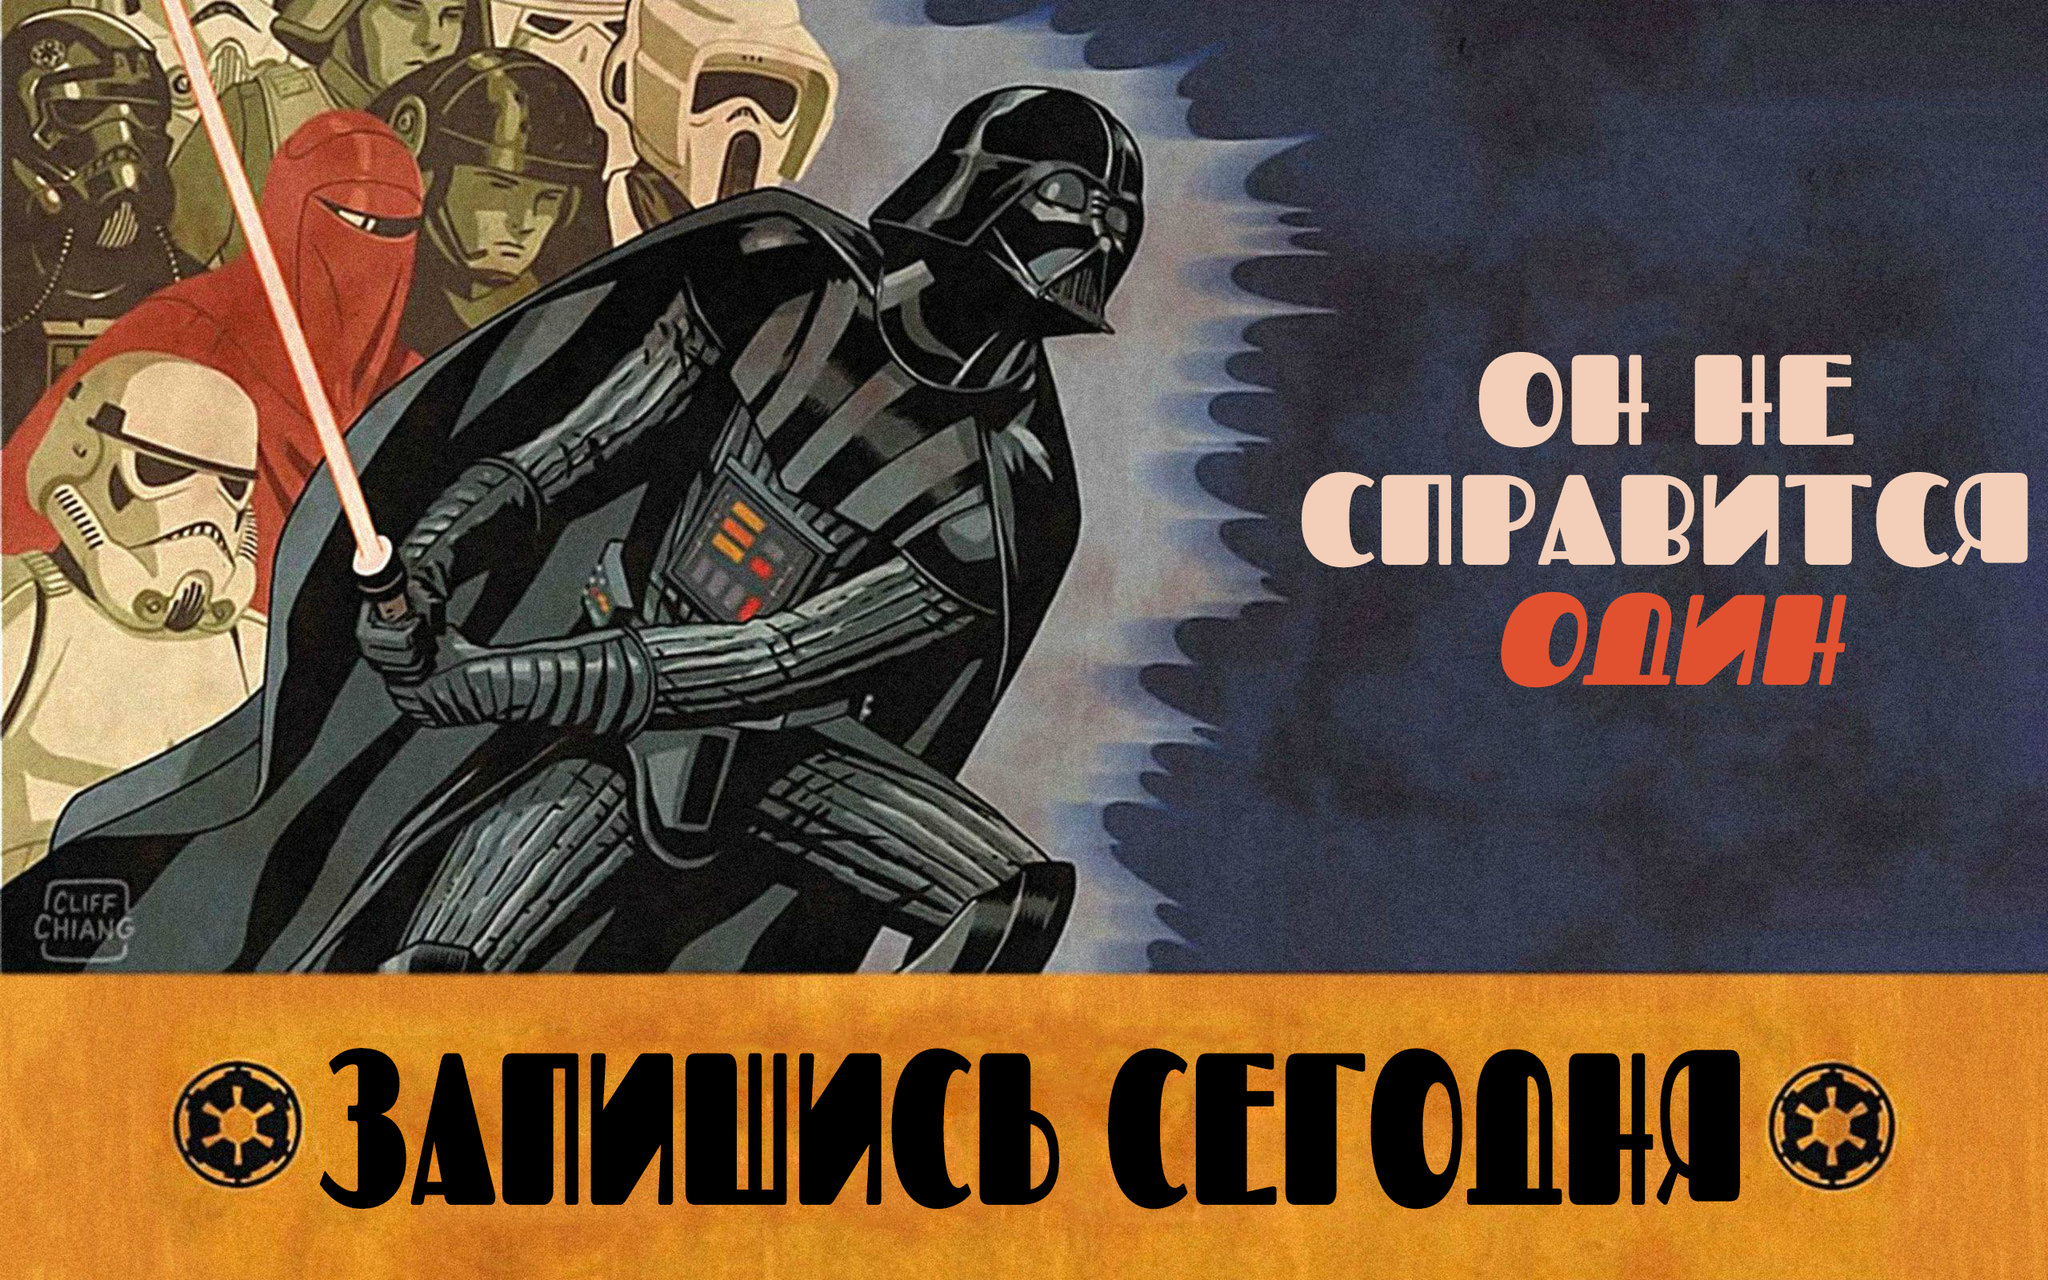 Star Wars propaganda posters - Star Wars, Propaganda poster, Propaganda, Translation, Longpost